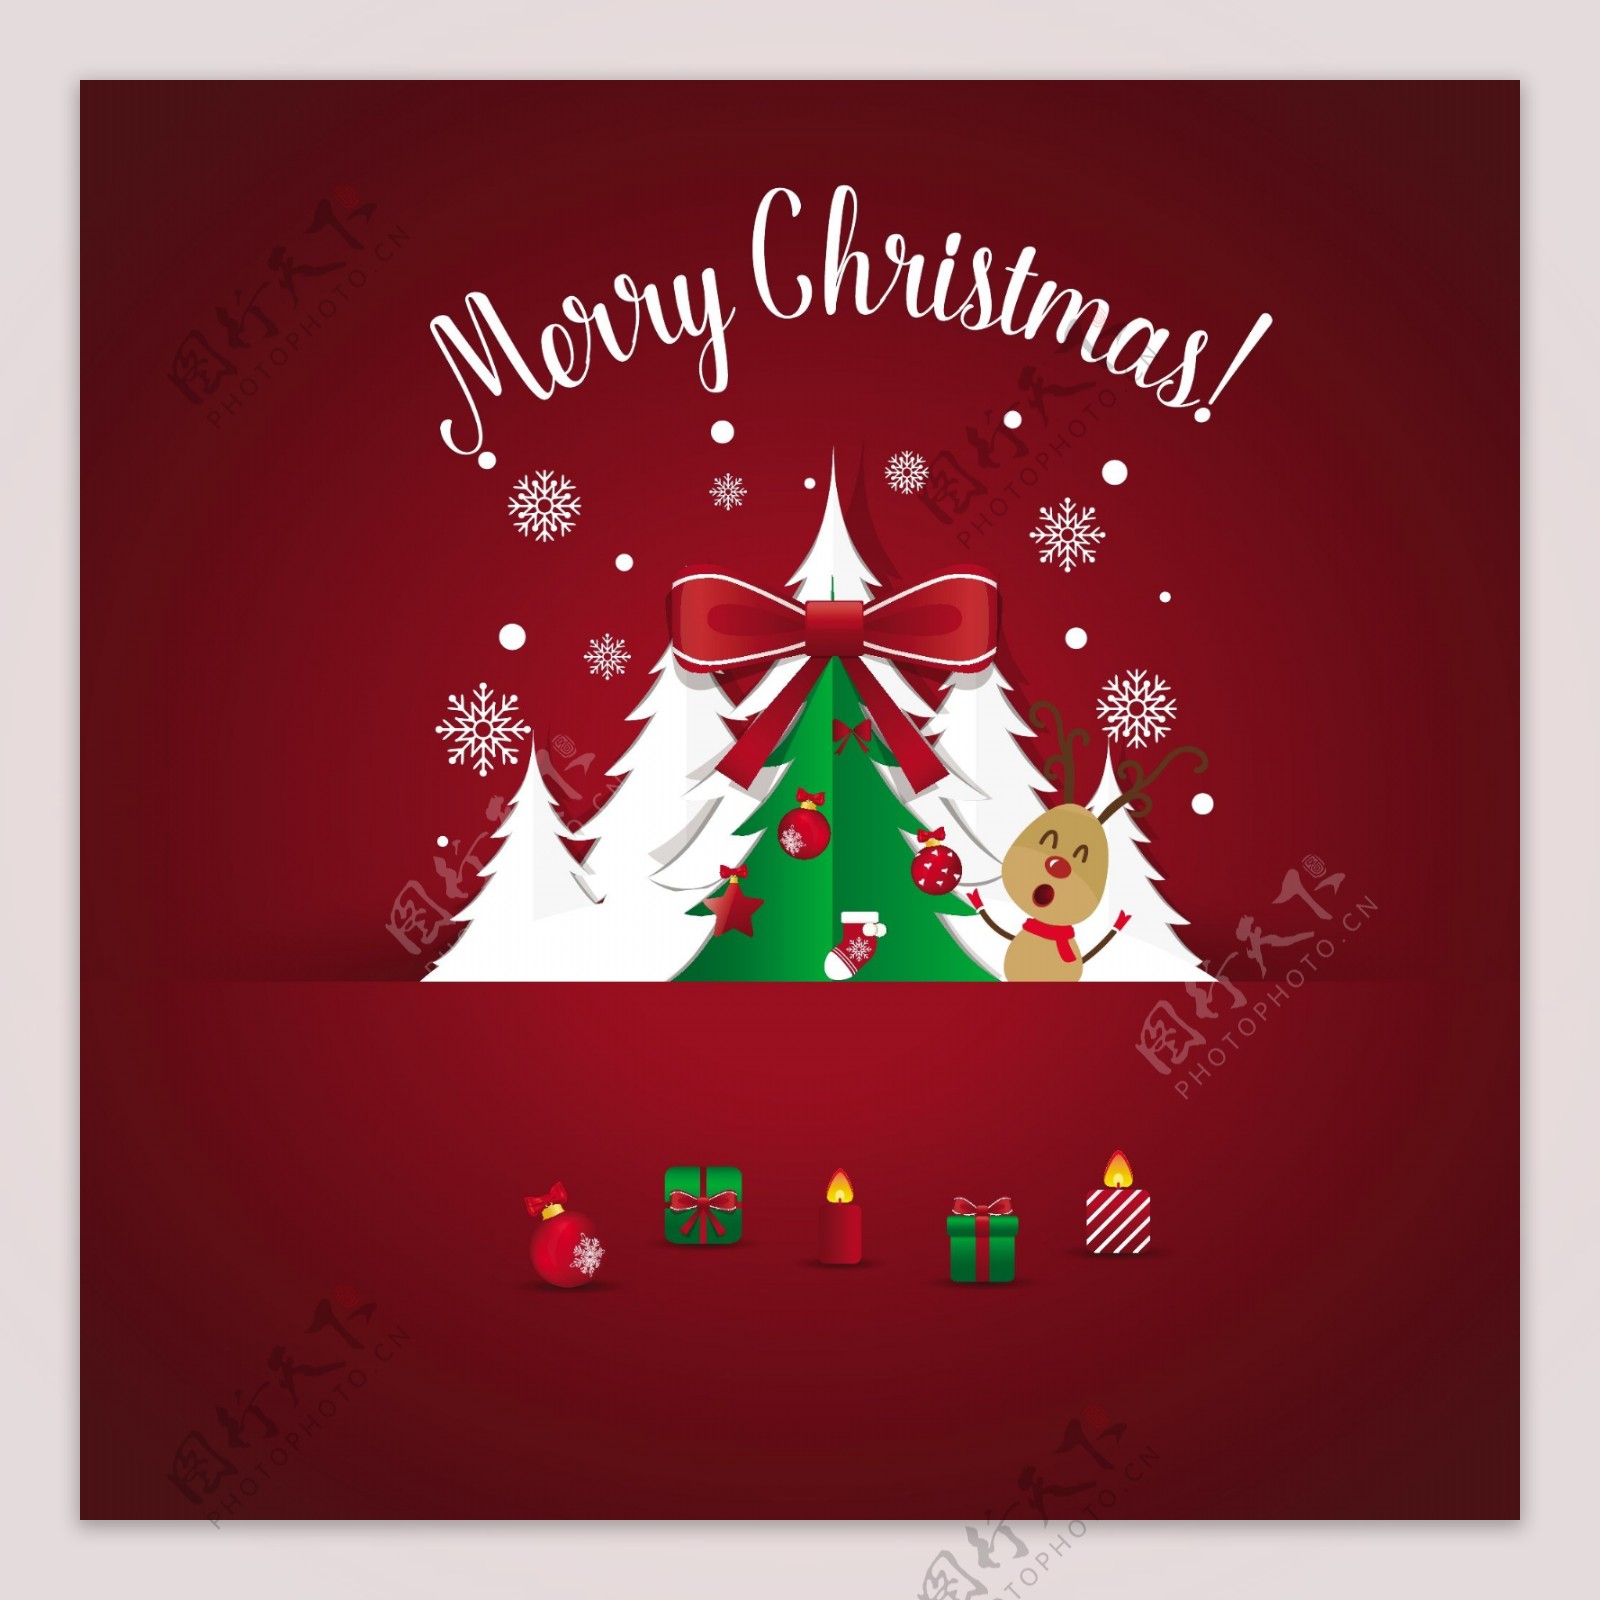 圣诞装饰树木背景设计